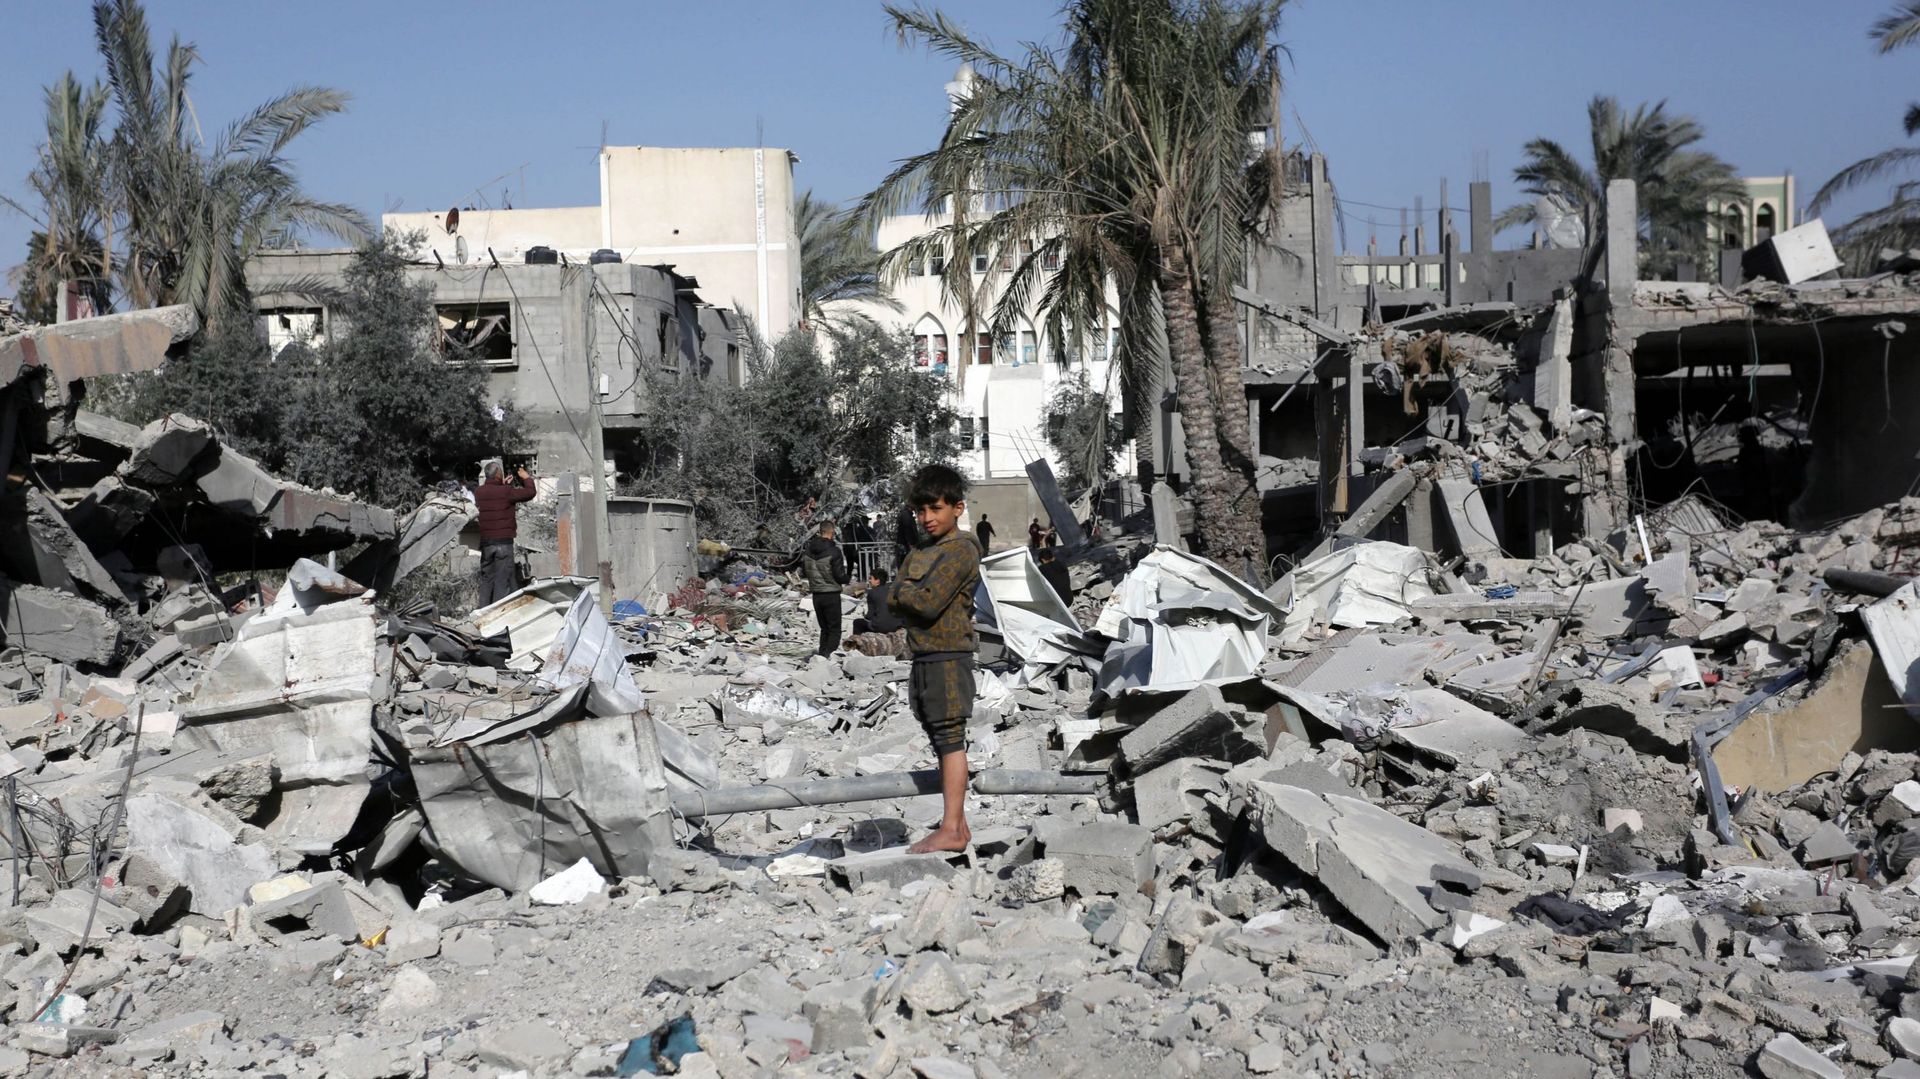 Un enfant est vu parmi les décombres alors que les résidents locaux mènent des efforts de recherche et de sauvetage parmi les décombres de l’immeuble détruit appartenant à la famille Abu Seif à la suite des attaques israéliennes contre un immeuble à Deir 